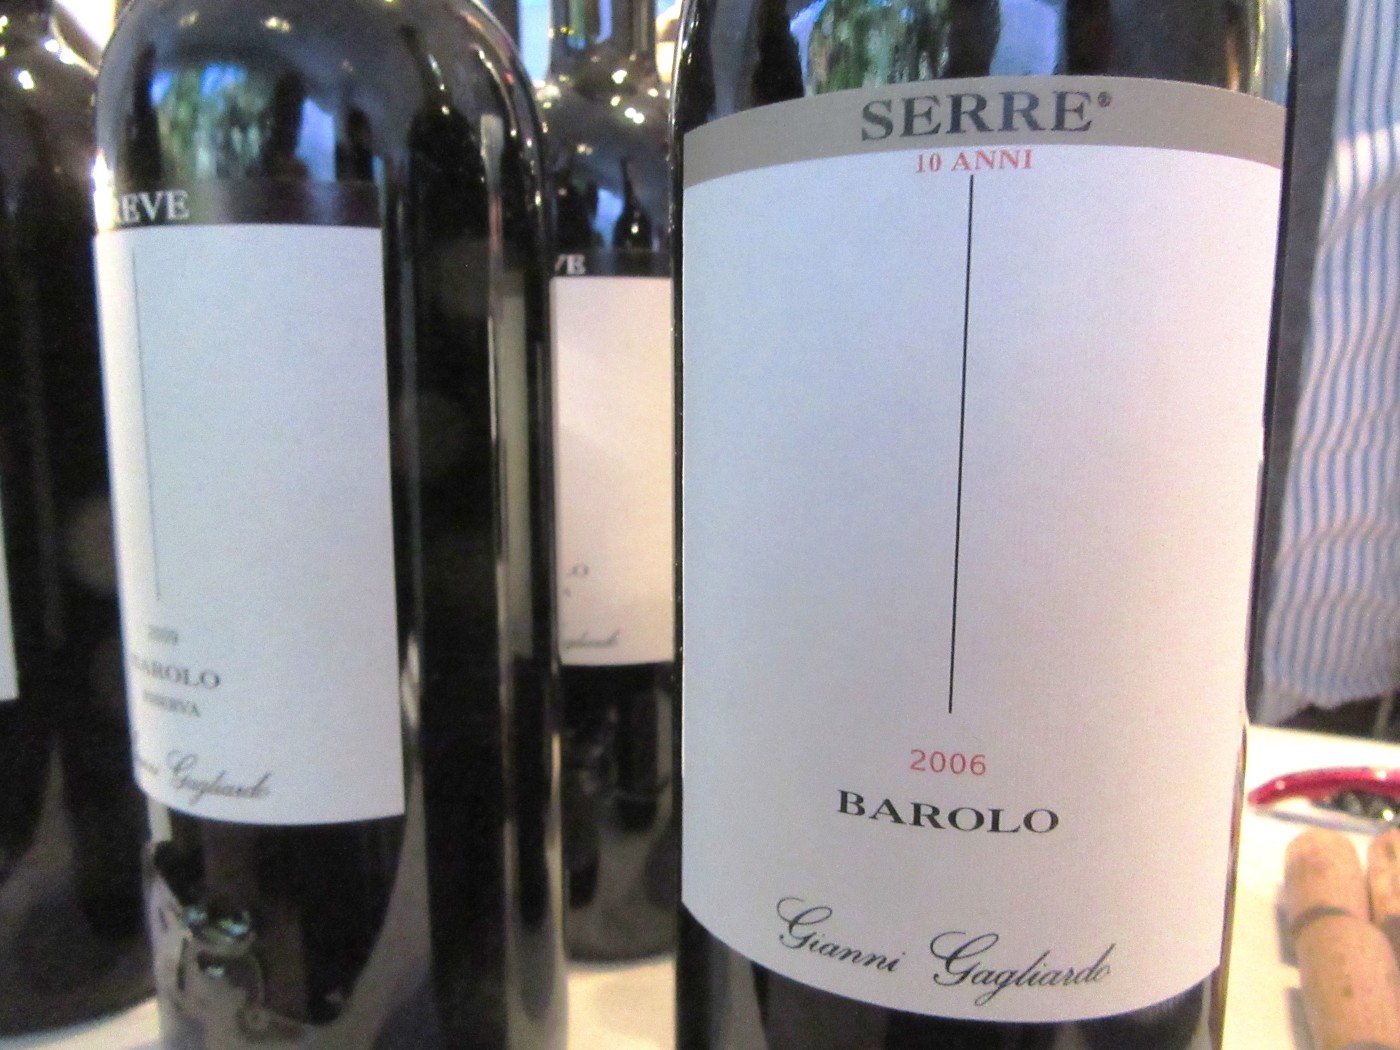 Gianni Gagliardo, Barolo Serre 10 Anni 2006, Piedmont, Italy, Wine Casual